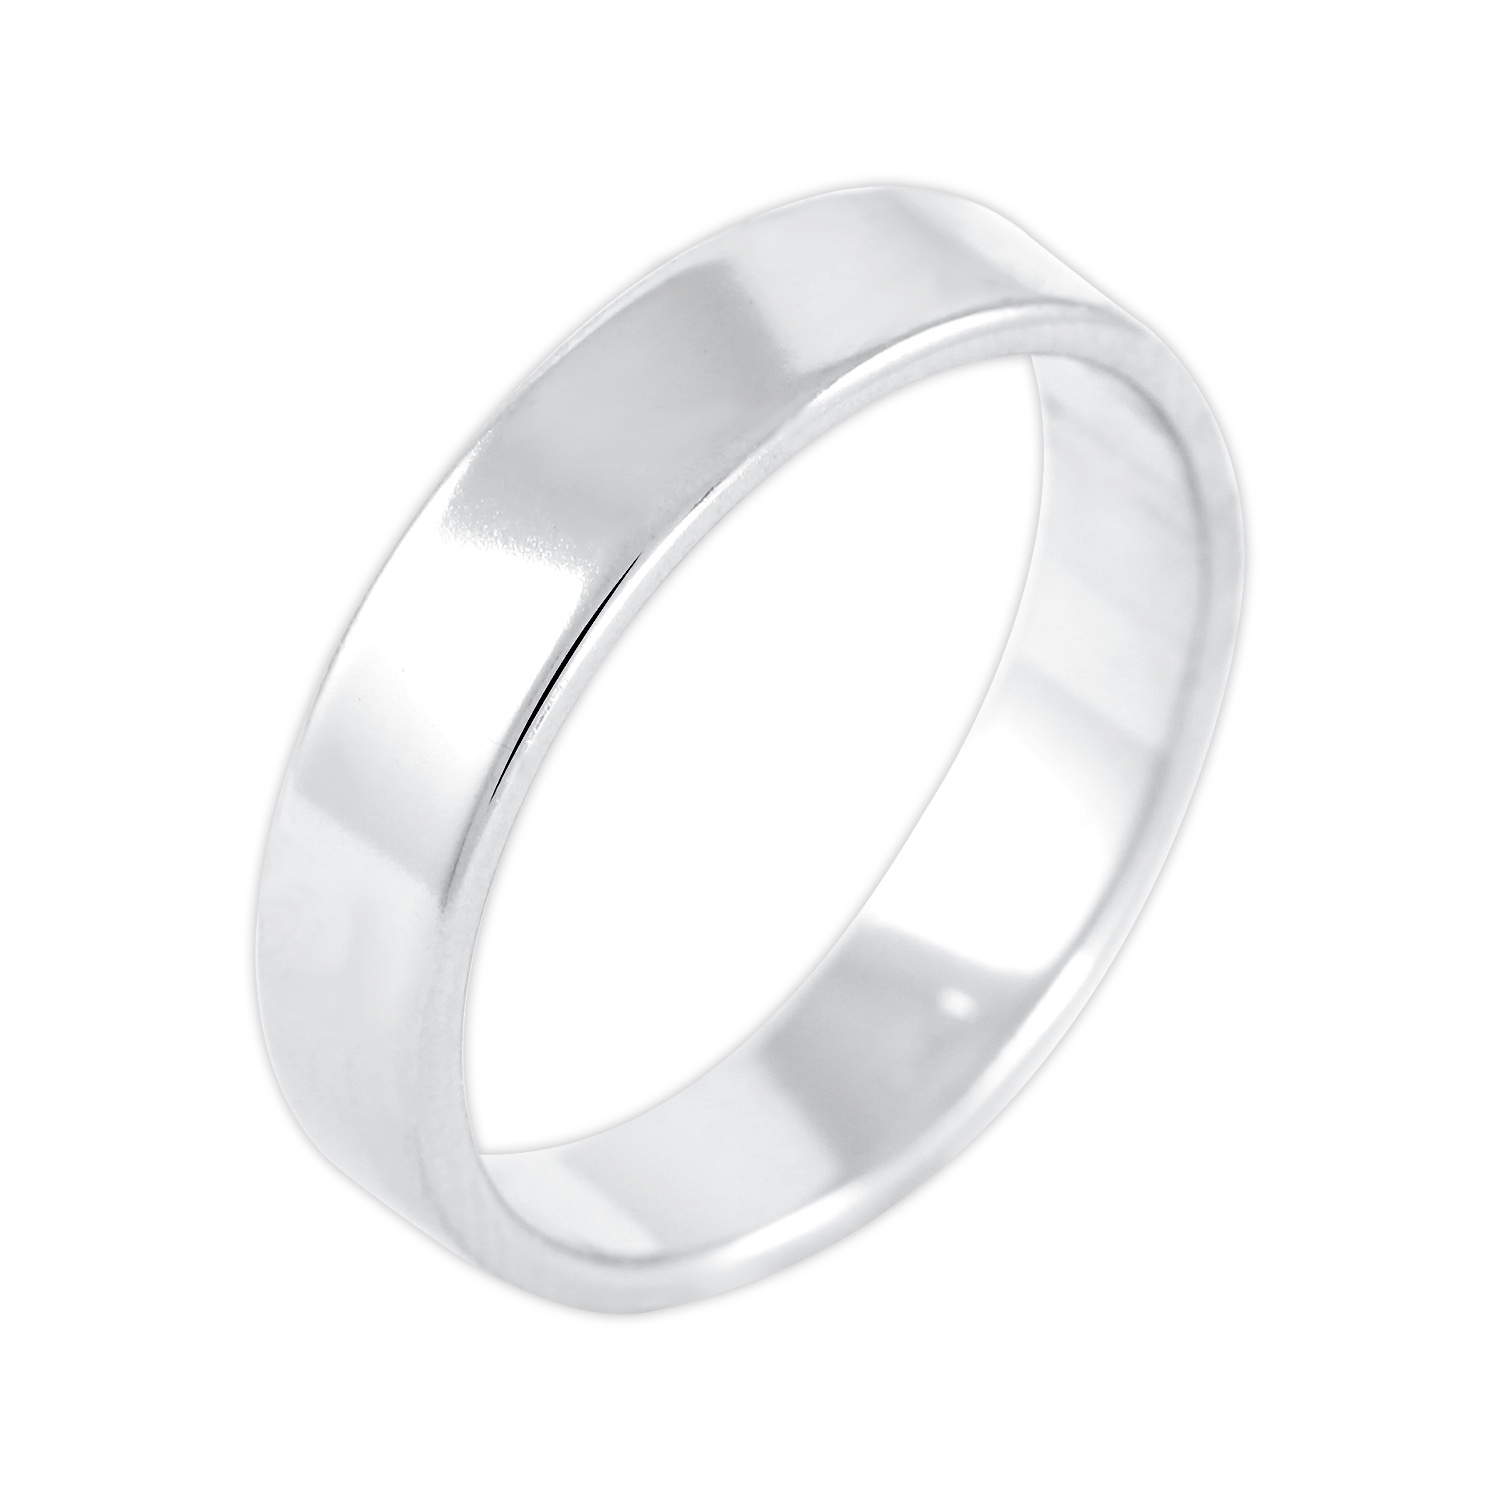 Brilio Silver Jemný stříbrný prsten 422 001 09069 04 50 mm